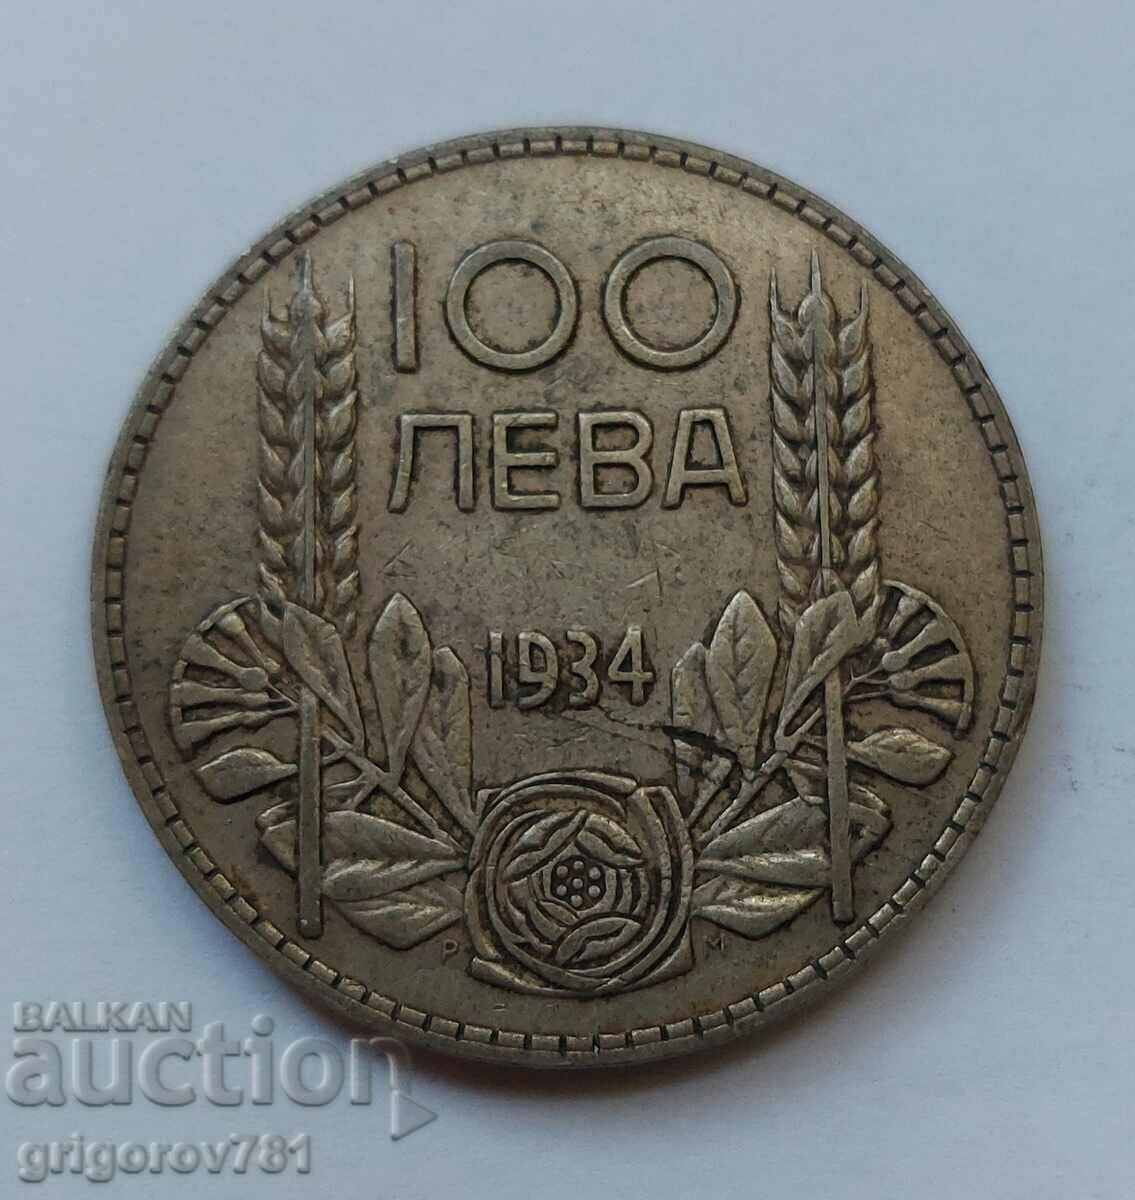 Ασήμι 100 λέβα Βουλγαρία 1934 - ασημένιο νόμισμα #26